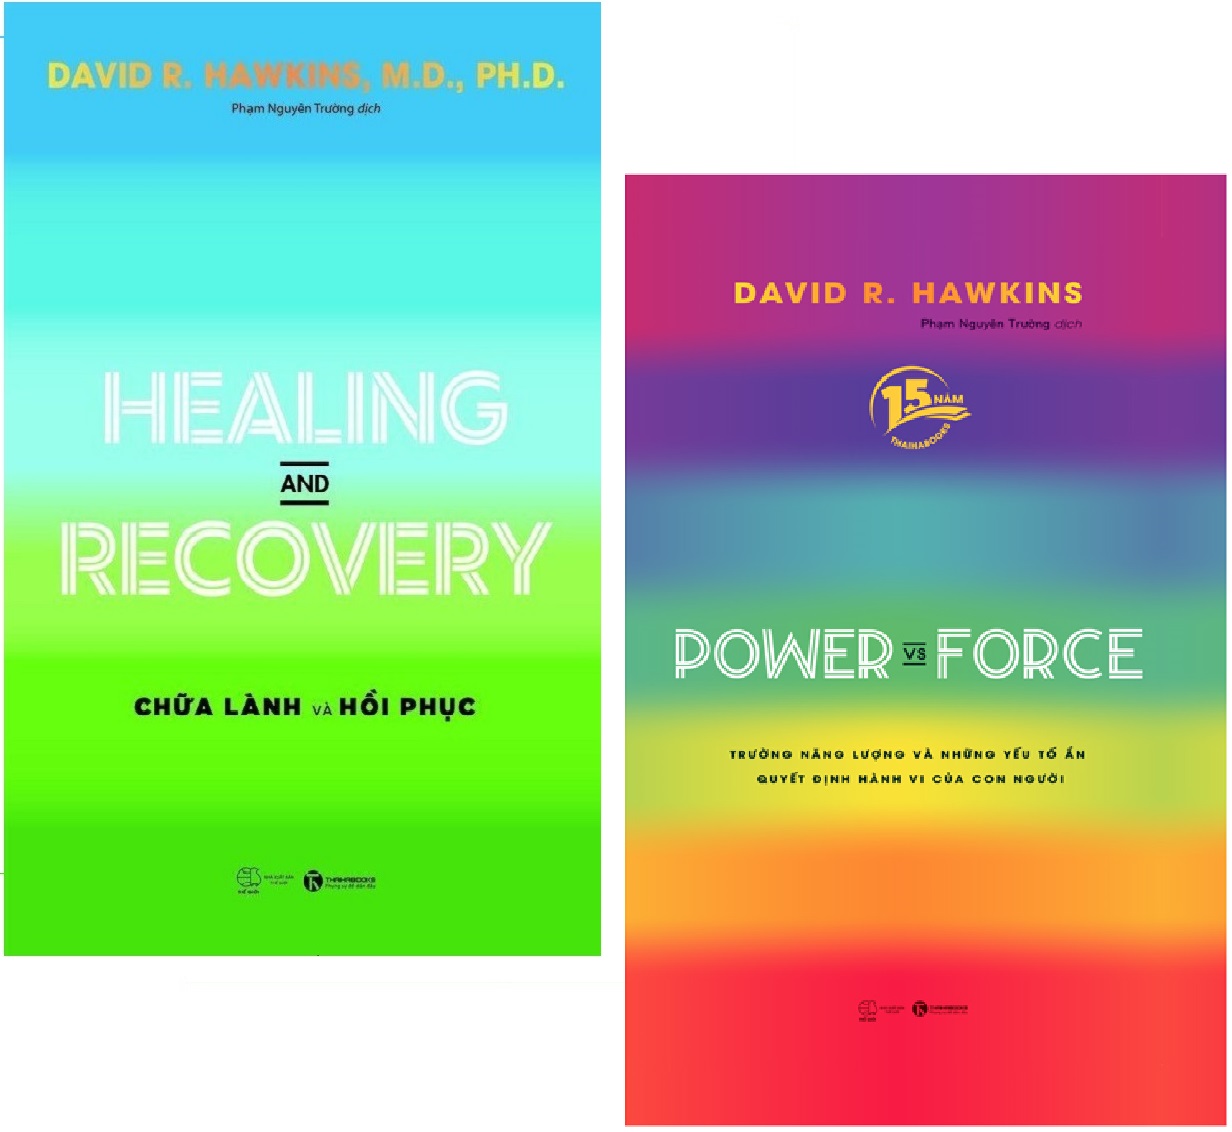 Combo 2 Cuốn sách: Healing And Recovery - Chữa Lành Và Phục Hồi + Power Vs Force - Trường Năng Lượng Và Những Nhân Tố Quyết Định Tinh Thần Và Sức Khỏe Con Người